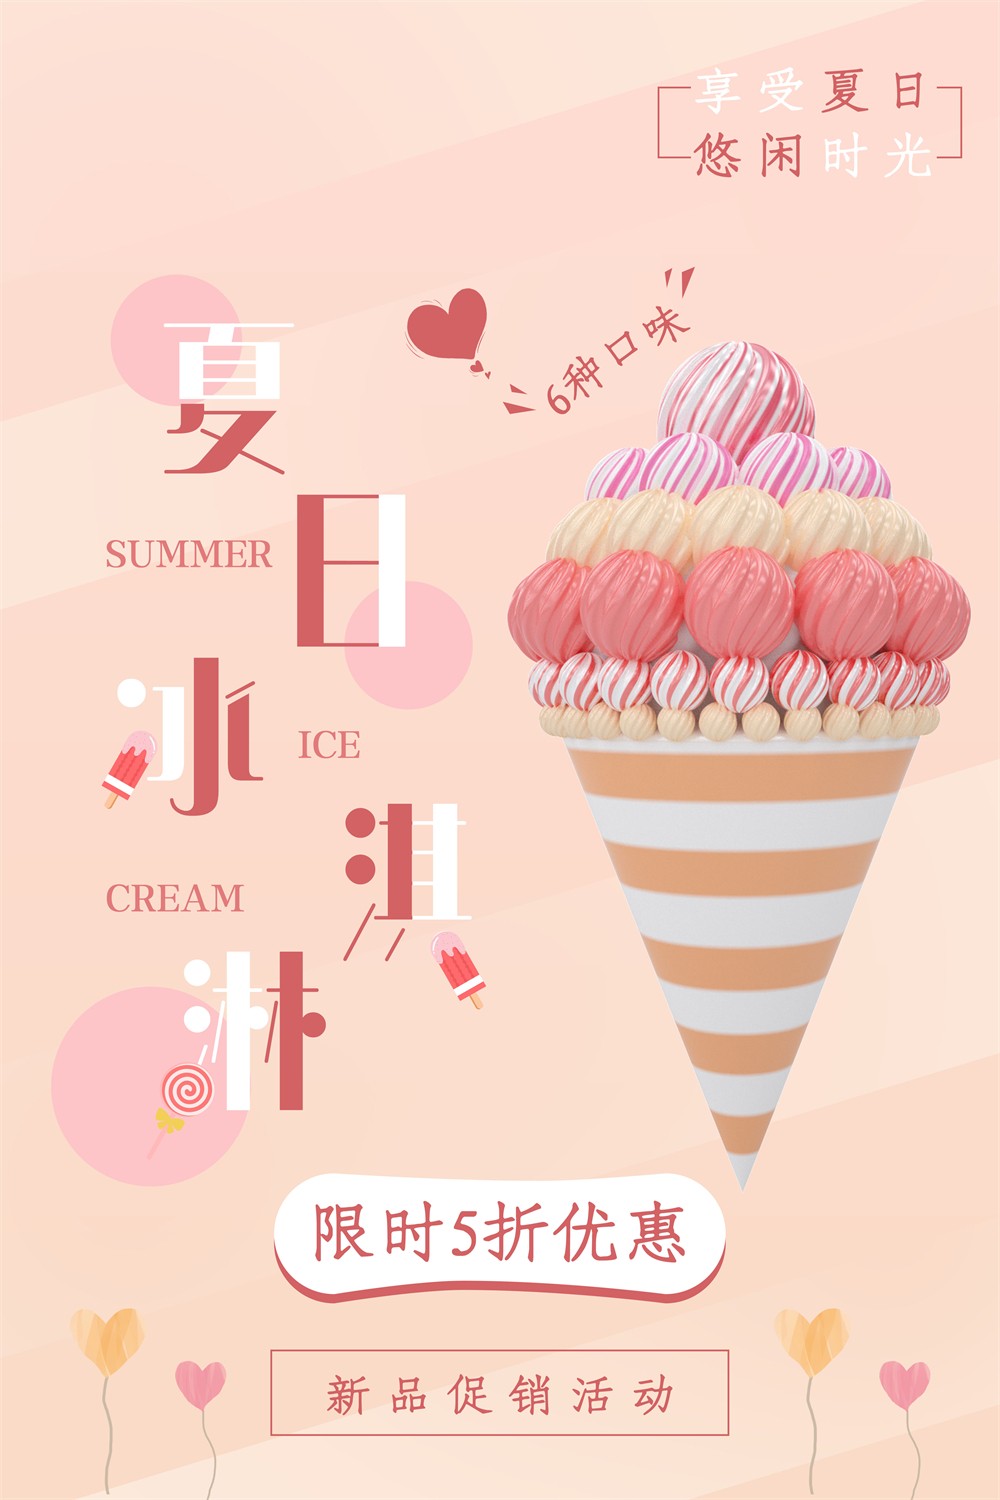 享受夏日冰淇淋限时促销广告海报